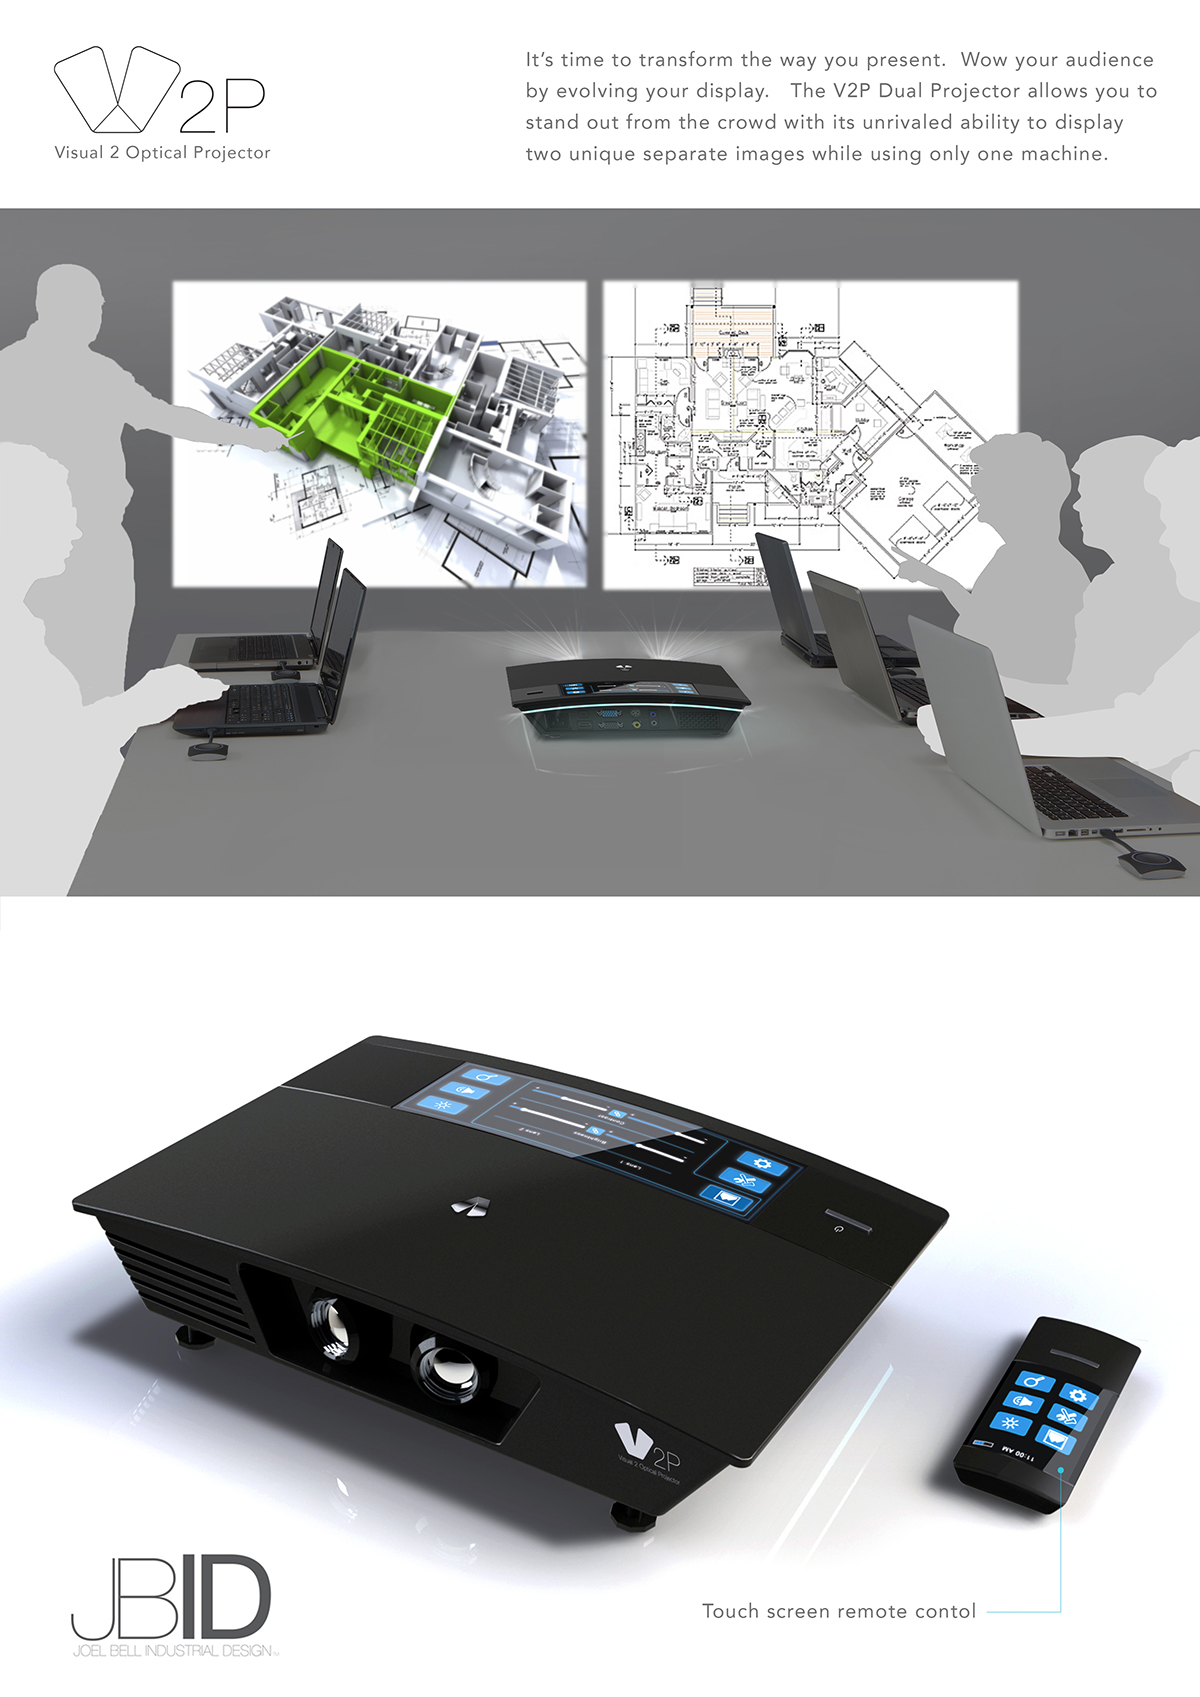 #productdesign #projector #ladesigner #Industrialdesigner #ladesign #3Drendering #concept #conceptdevelopment #joelbellid